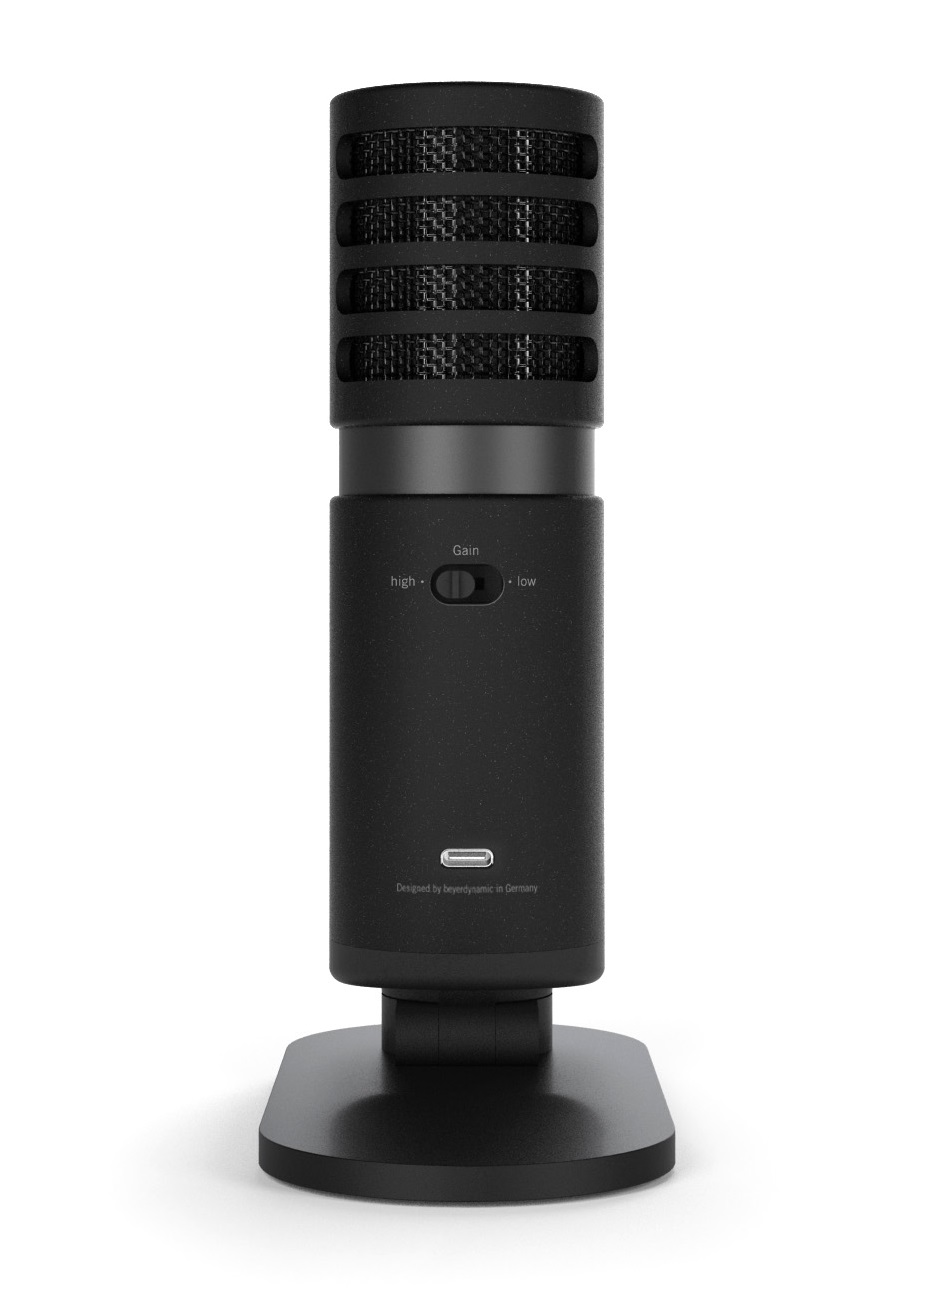 Micrófono de estudio USB de Beyerdinamic para grabación y podcasting